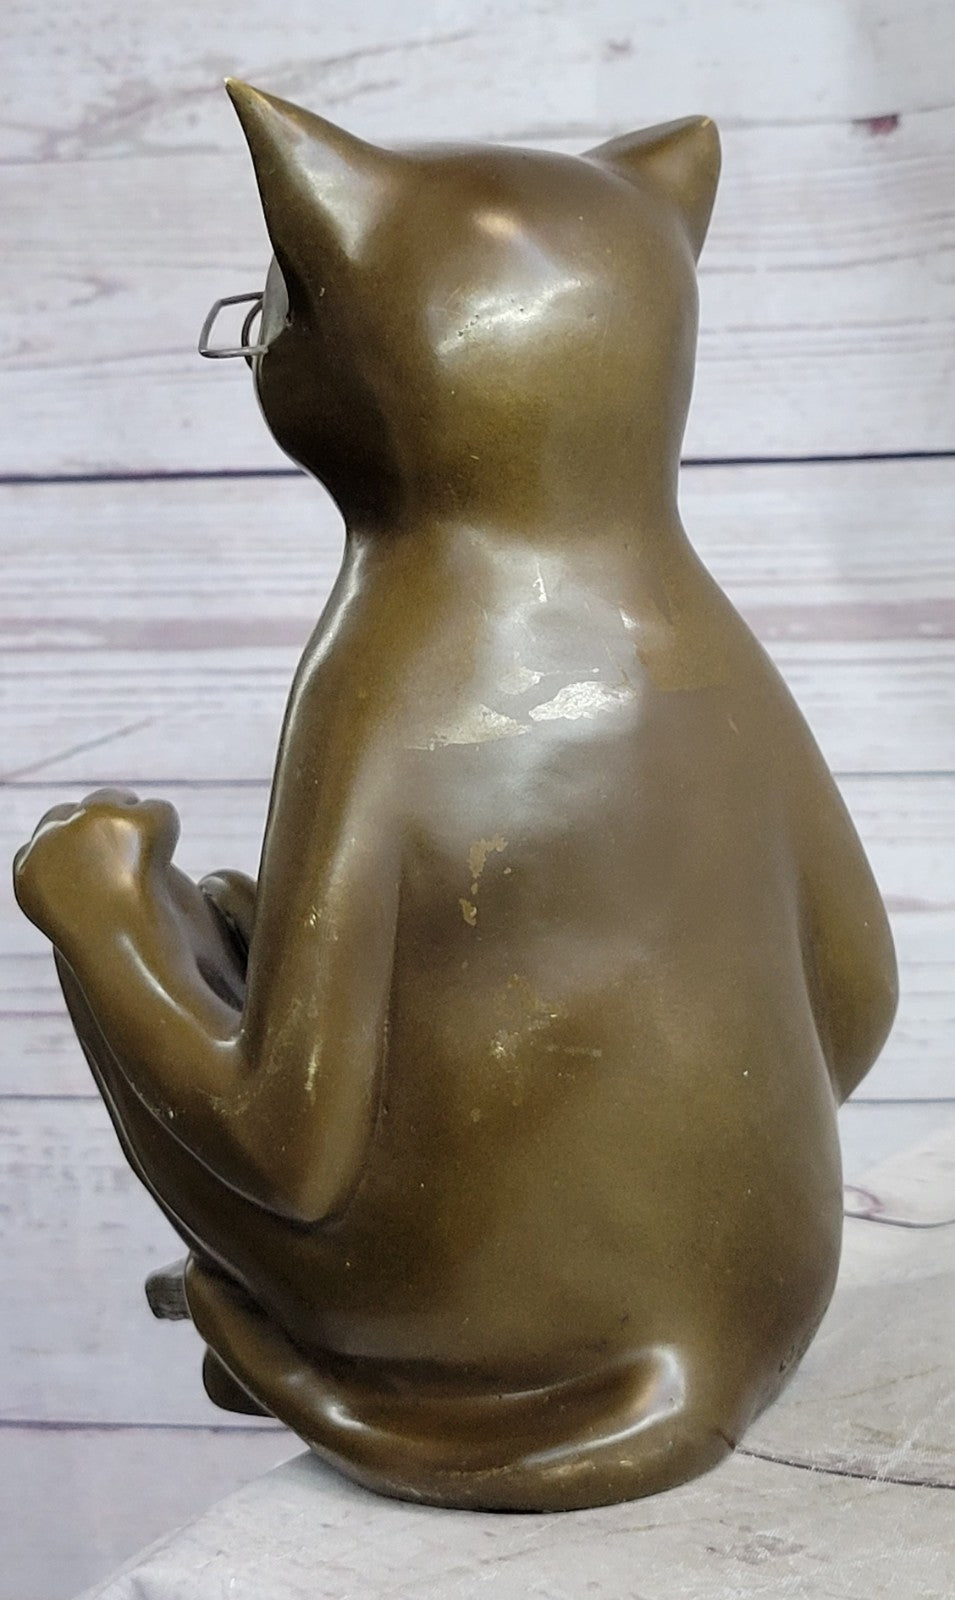 CAT Figurine STATUE Reading GLASSES 100% Bronze Indoor OUTDOOR Gift Hotcast